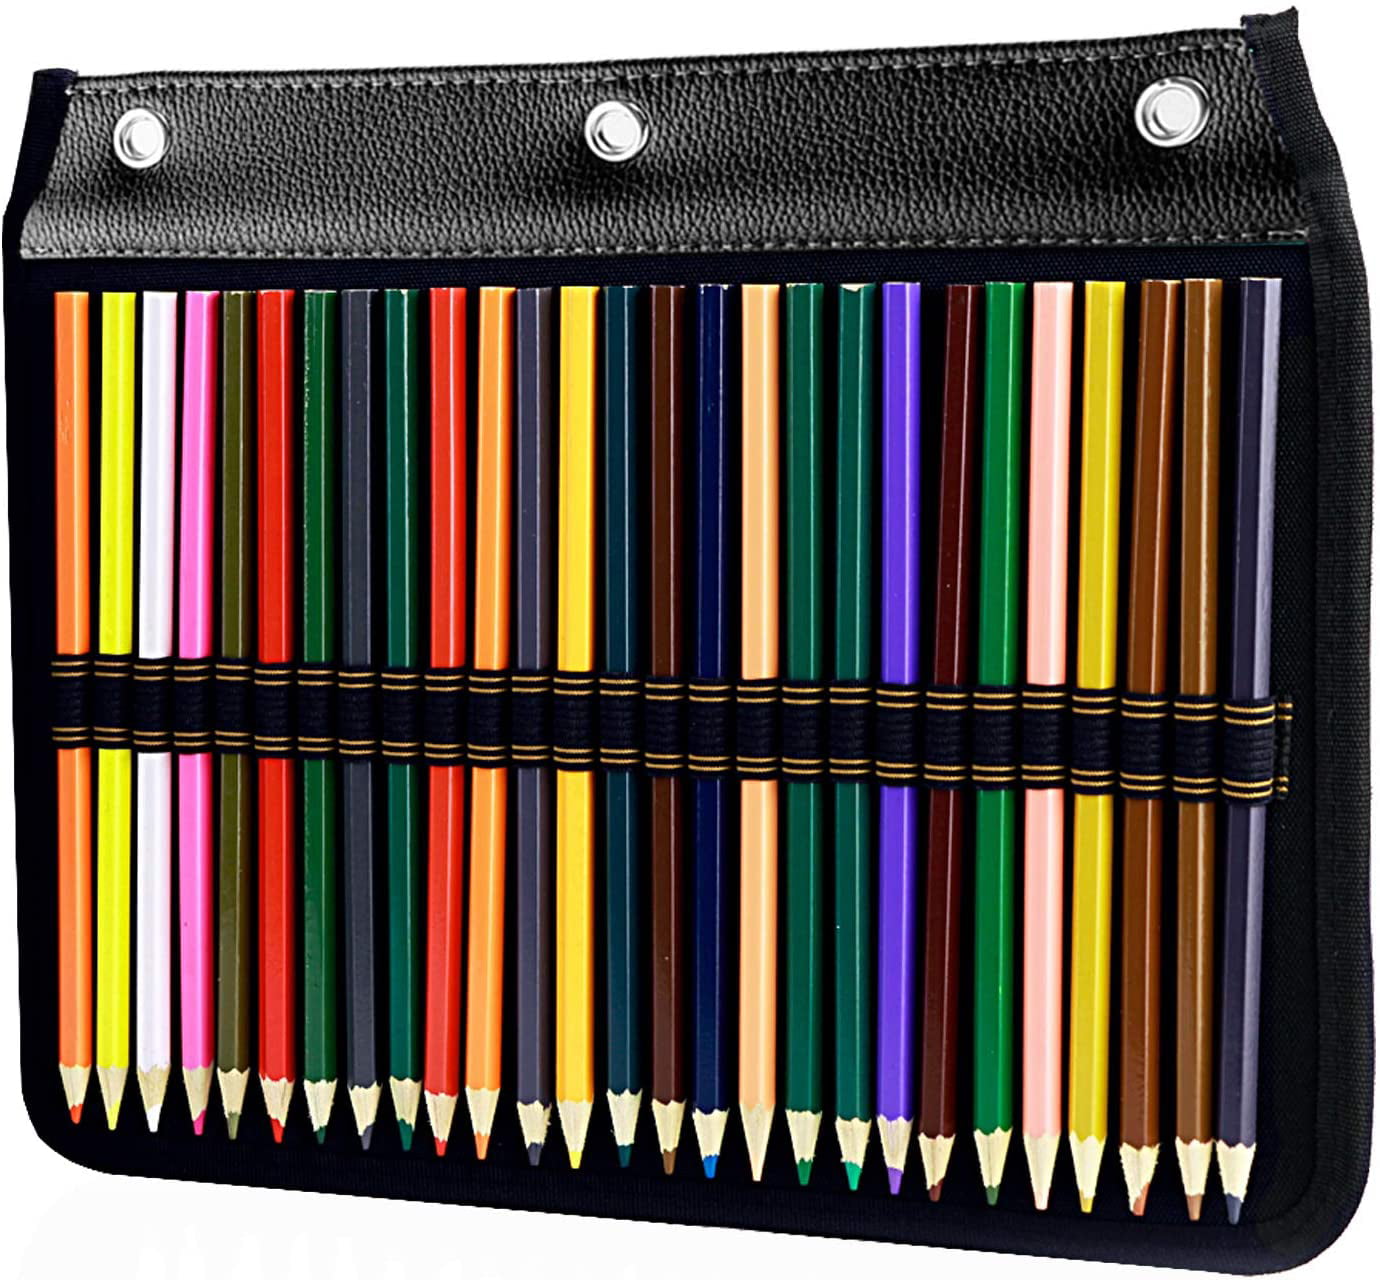 BTSKY Canvas 108 Slot Pencil Roll Wrap-Pencil Pouches Holder Fit for Prismacolor Premier Colored Pencils 108 Slot Building 